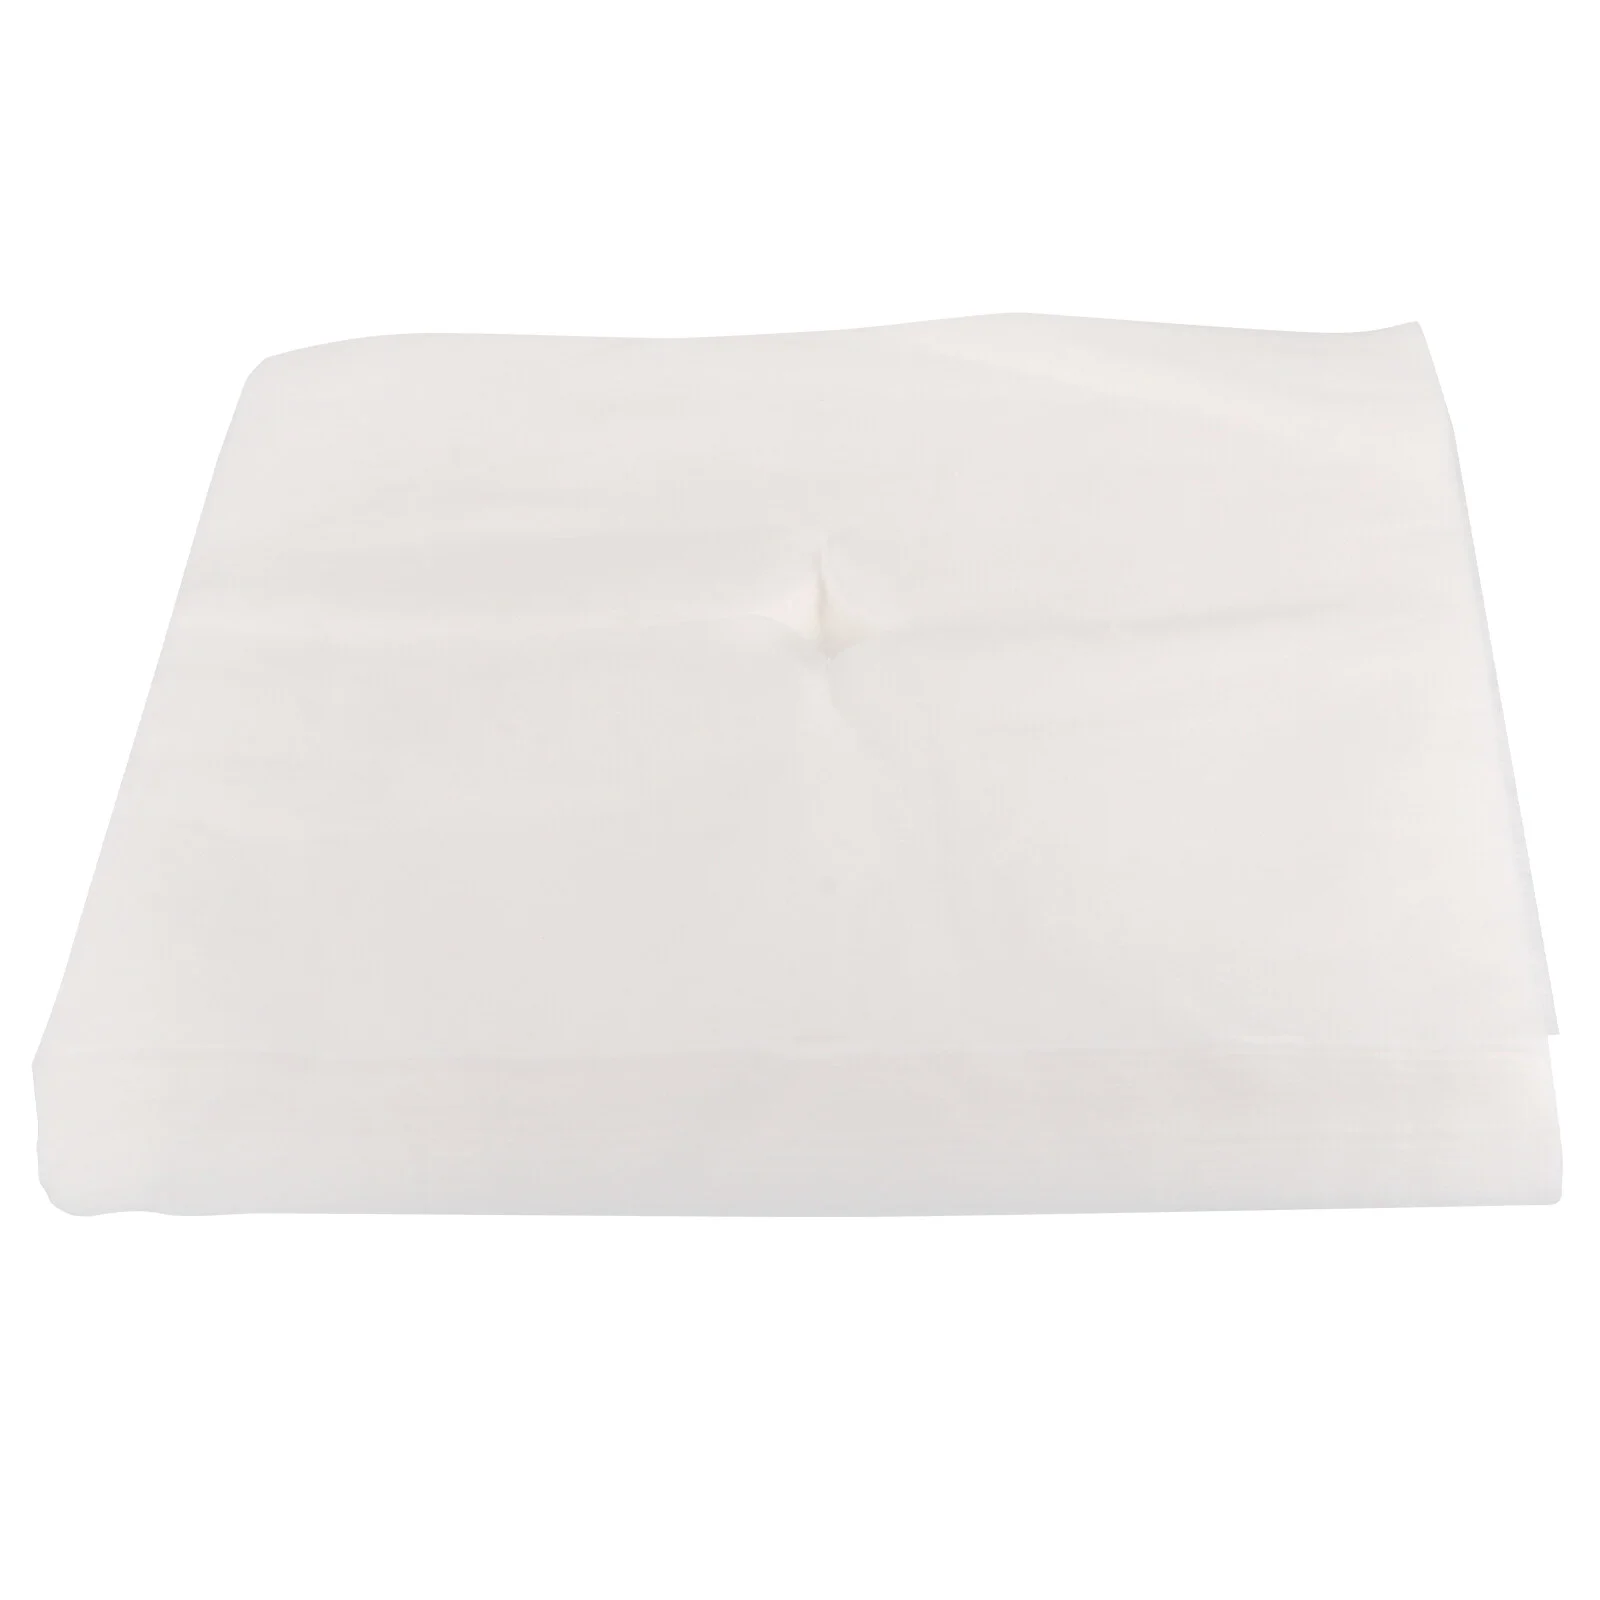 

100 шт массажный стол одноразовая подушка чехол полотенце с отверстием для лица дышащая крышка спа нетканый материал массажер